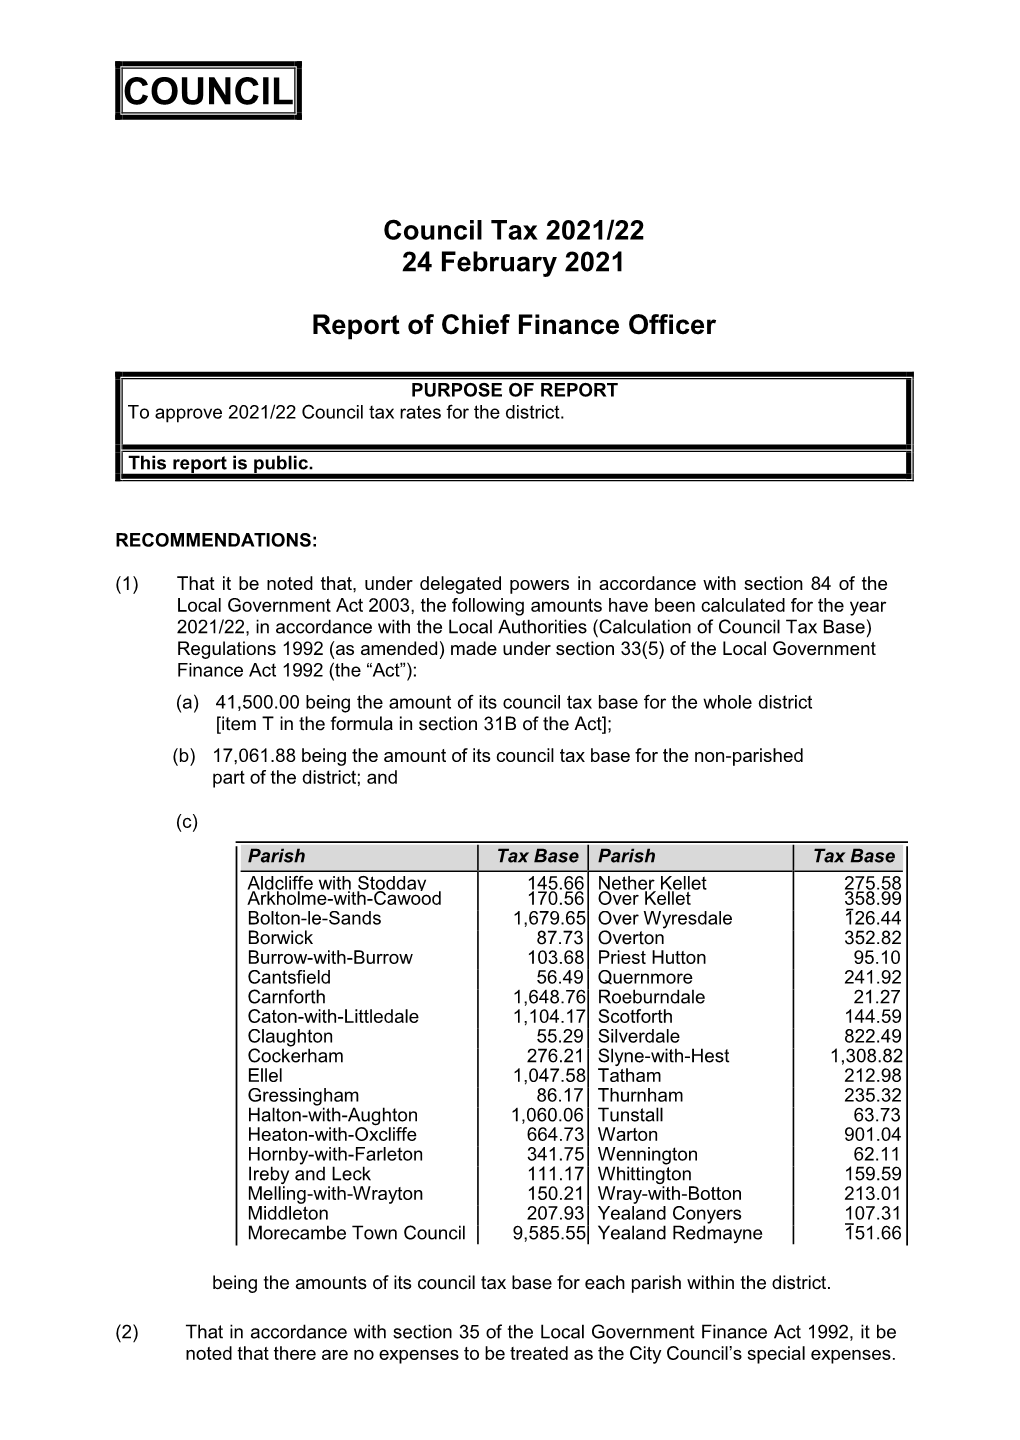 Council Tax 2021/2022 PDF 503 KB